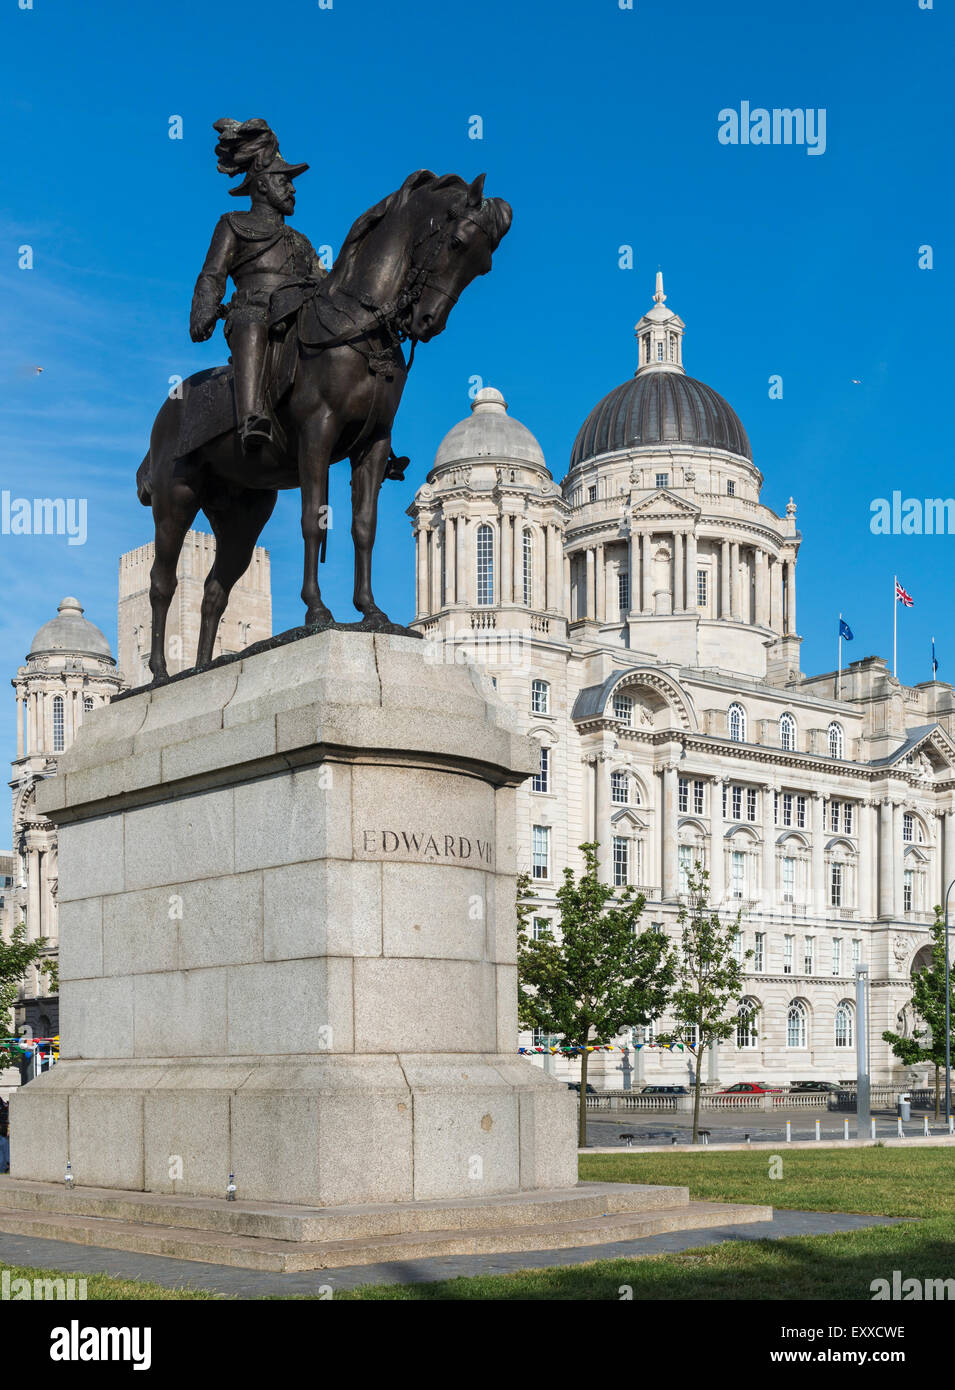 Edward VII statue devant le port de Liverpool Building, ou bureau Dock, Liverpool, Angleterre, Royaume-Uni Banque D'Images